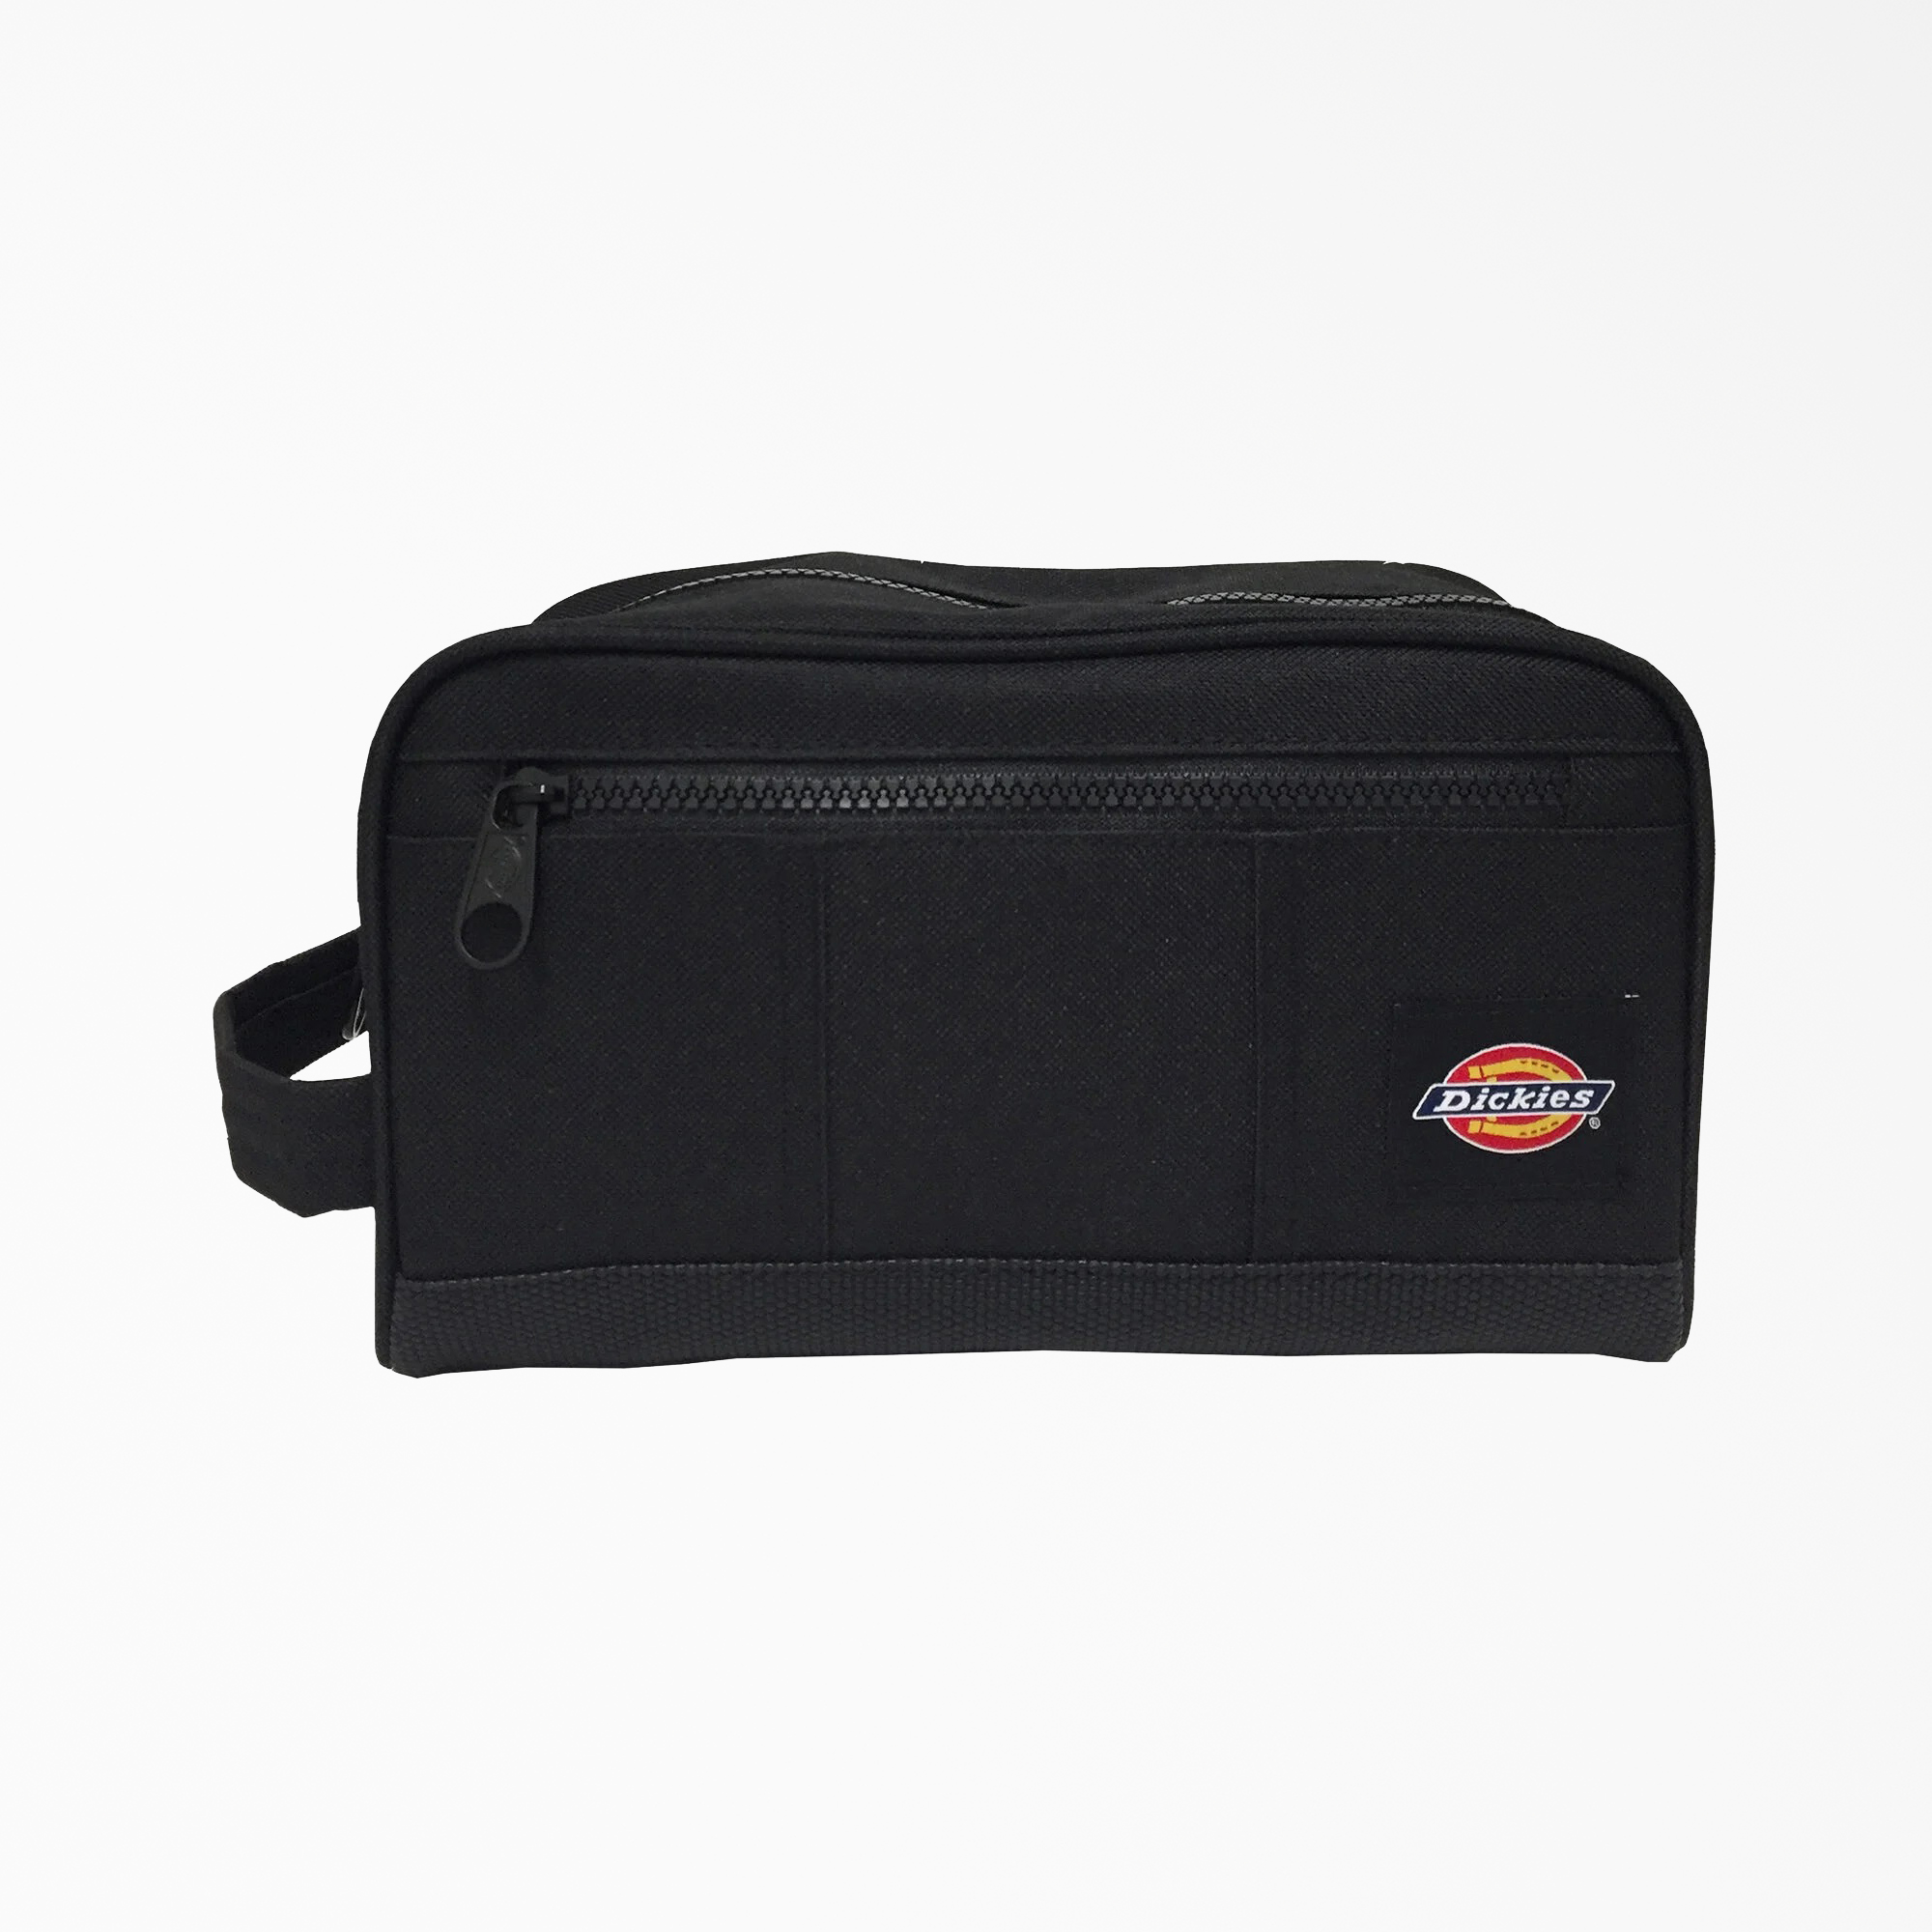 Doppler Kit Travel Bag - Black (BK)